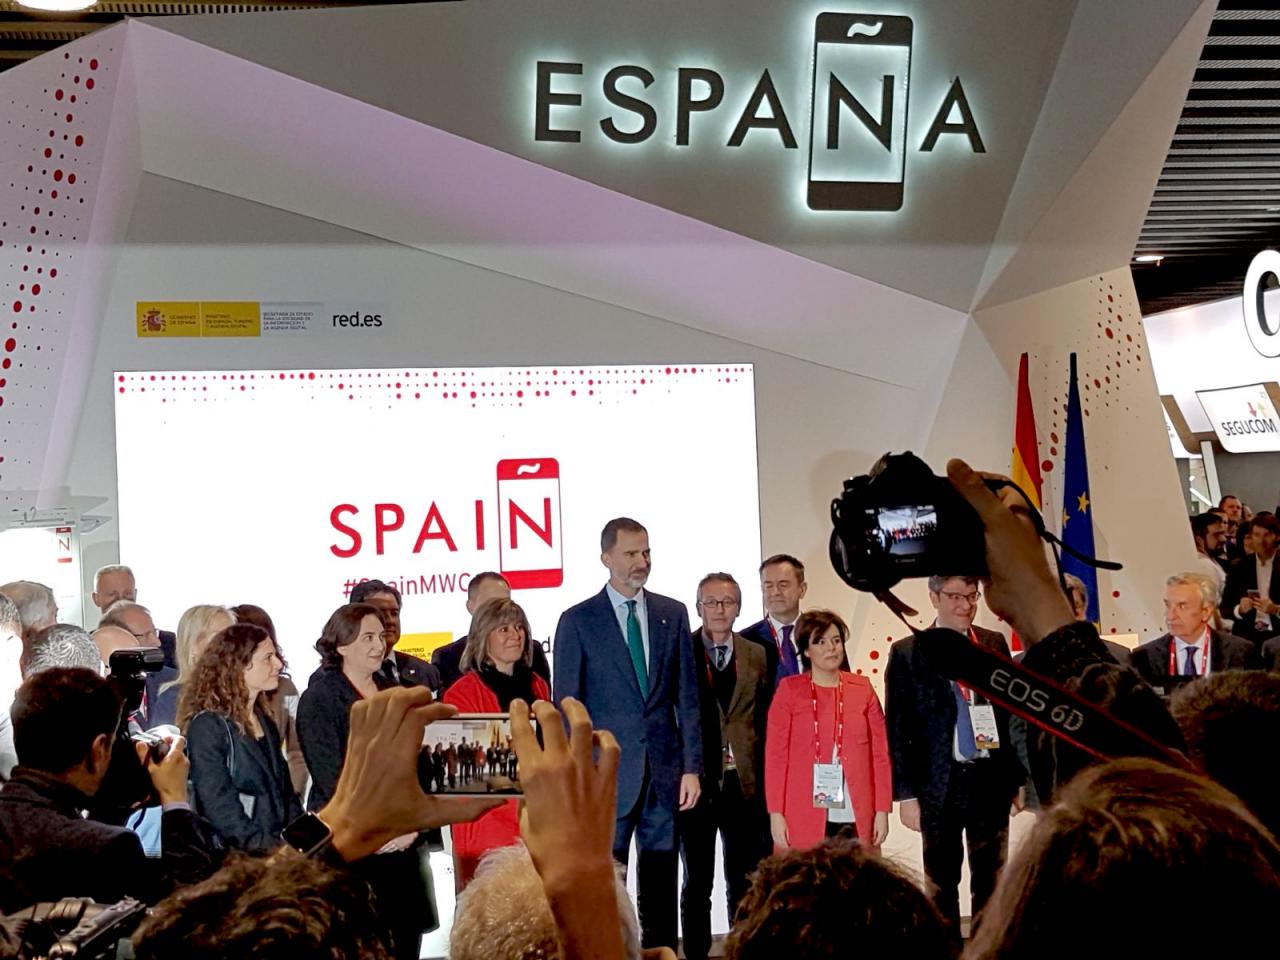 Visita institucional del Rey al Pabellón de España en el MWC 2019